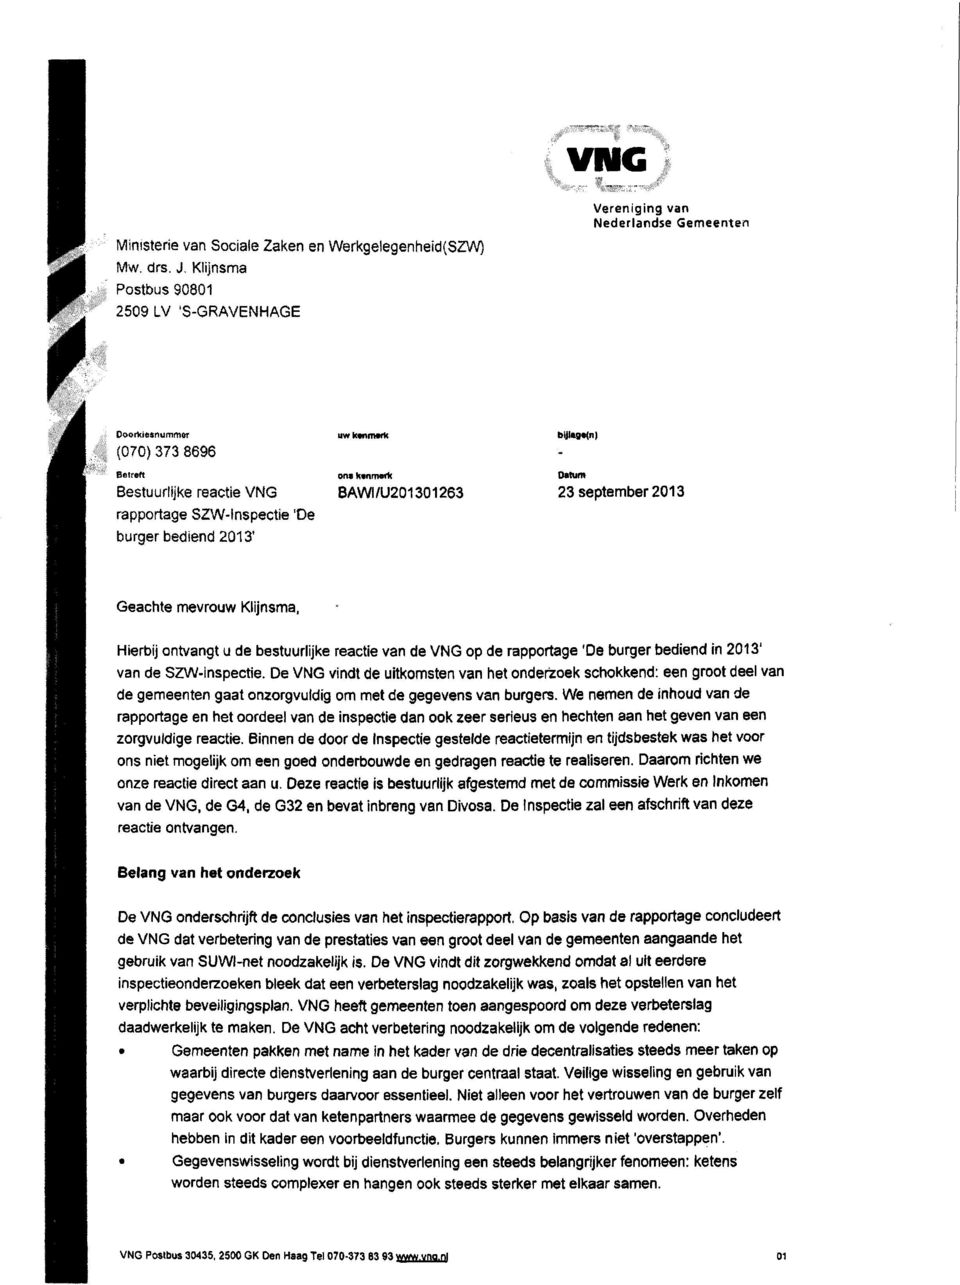 SZW-Inspectie 'De burger bediend 2013' Geachte mevrouw Klijnsma, Hierbij ontvangt u de bestuurlijke reactie van de VNG op de rapportage 'De burger bediend in 2013' van de SZW-inspectie.